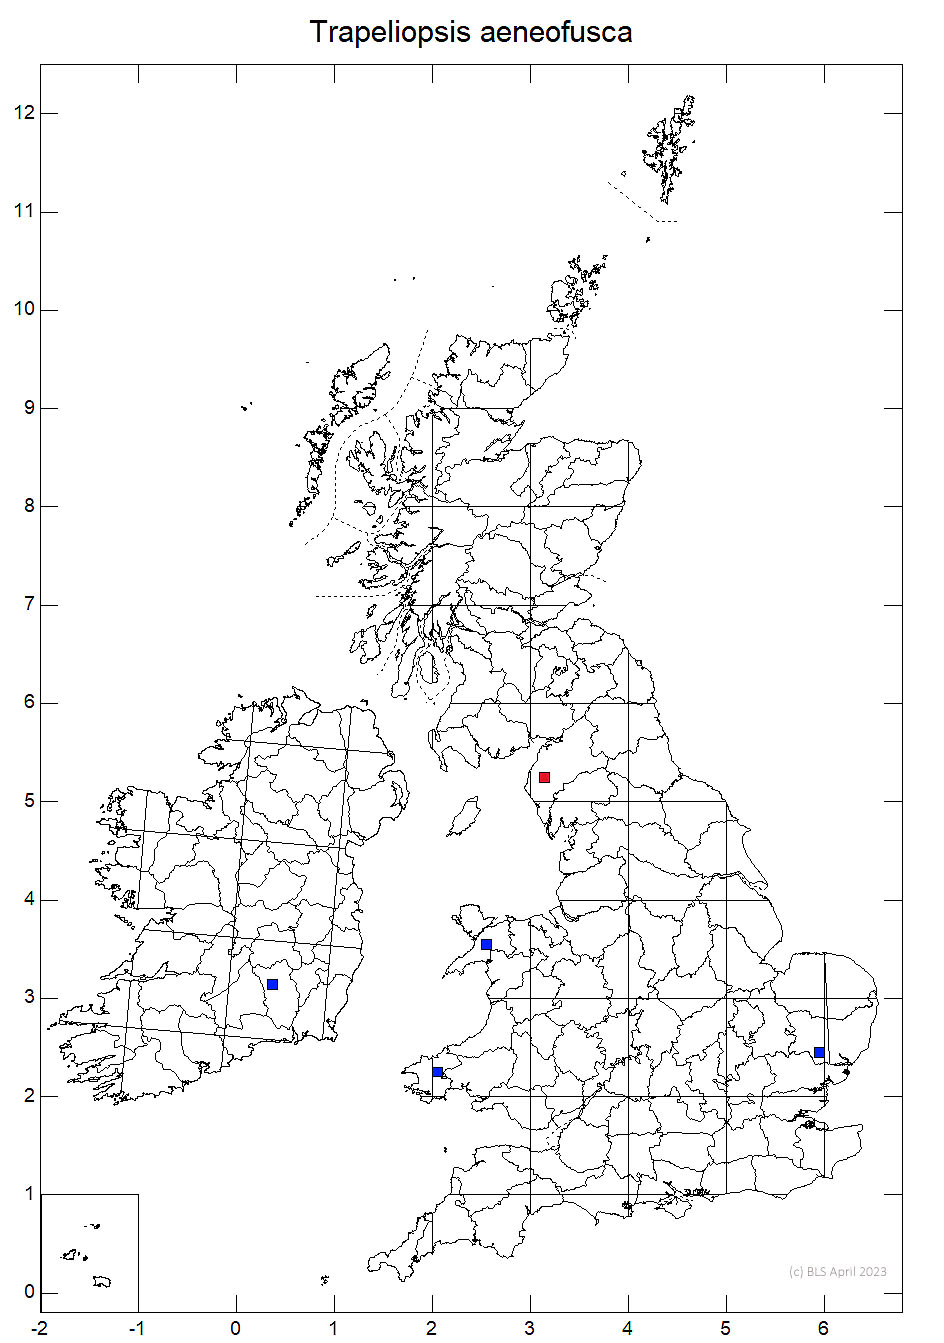 Trapeliopsis aeneofusca 10km sq distribution map